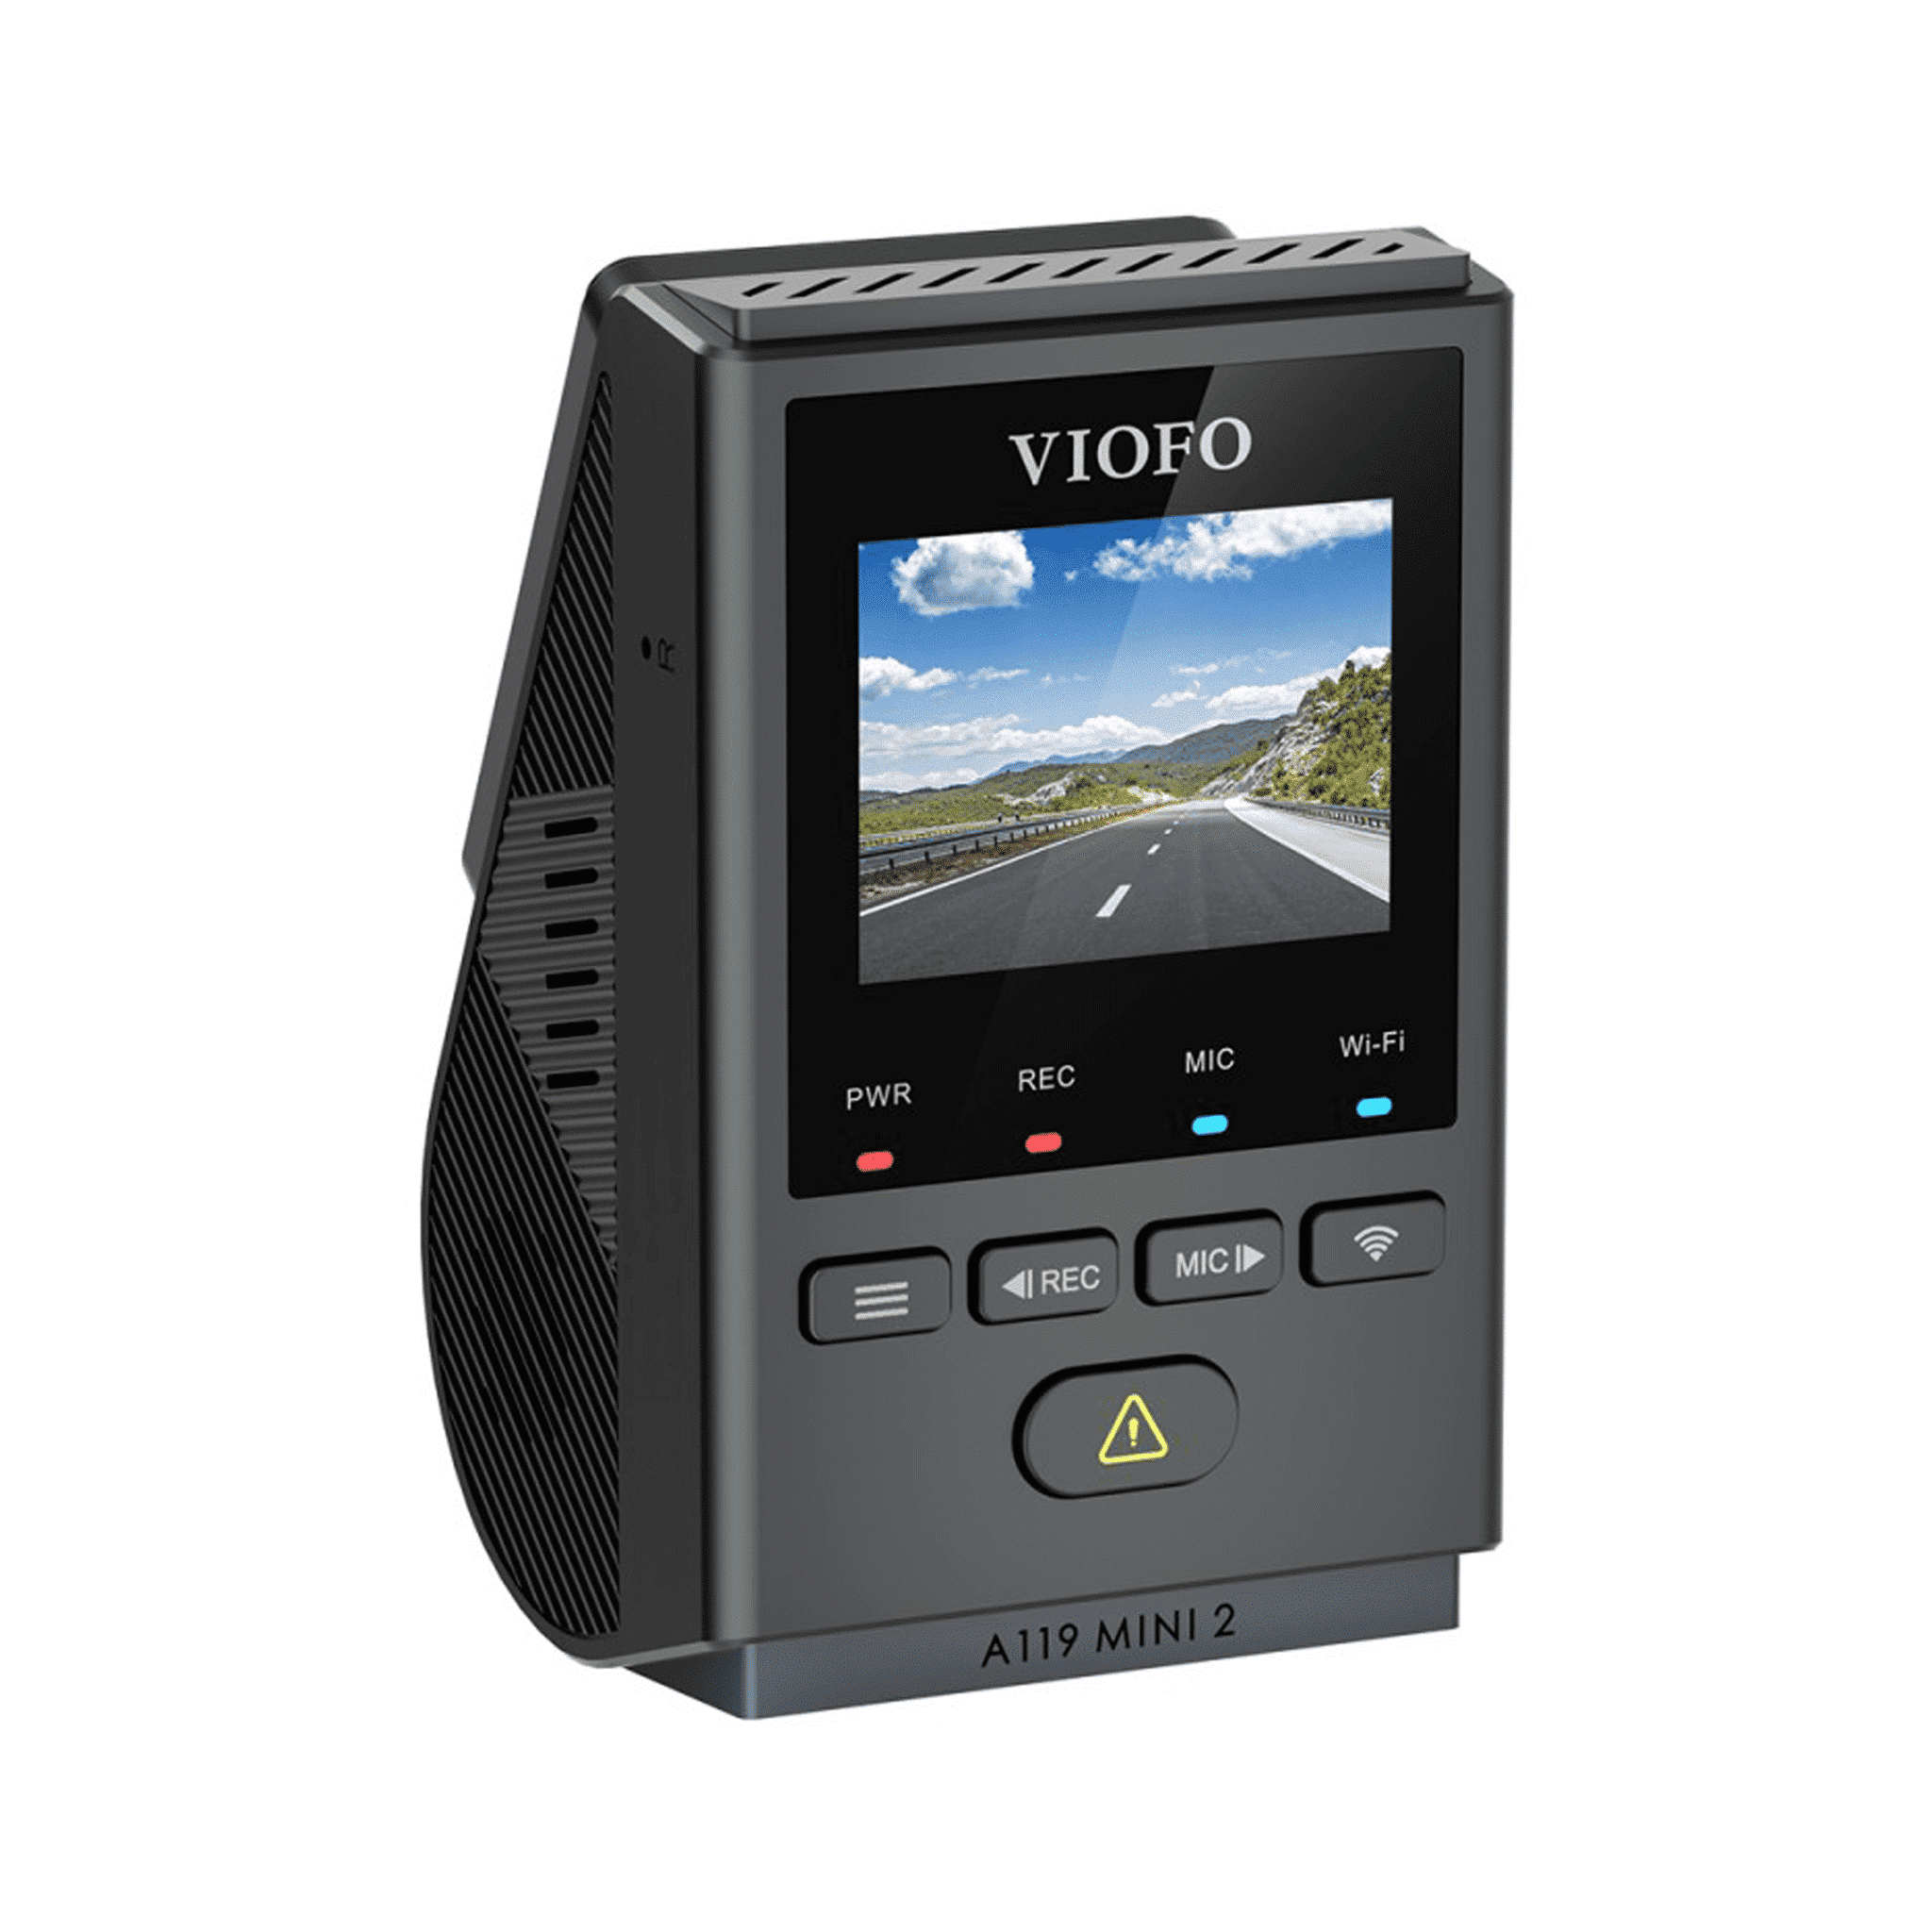 Kamera samochodowa VIOFO A119 MINI 2 1440p | z akcesoriami